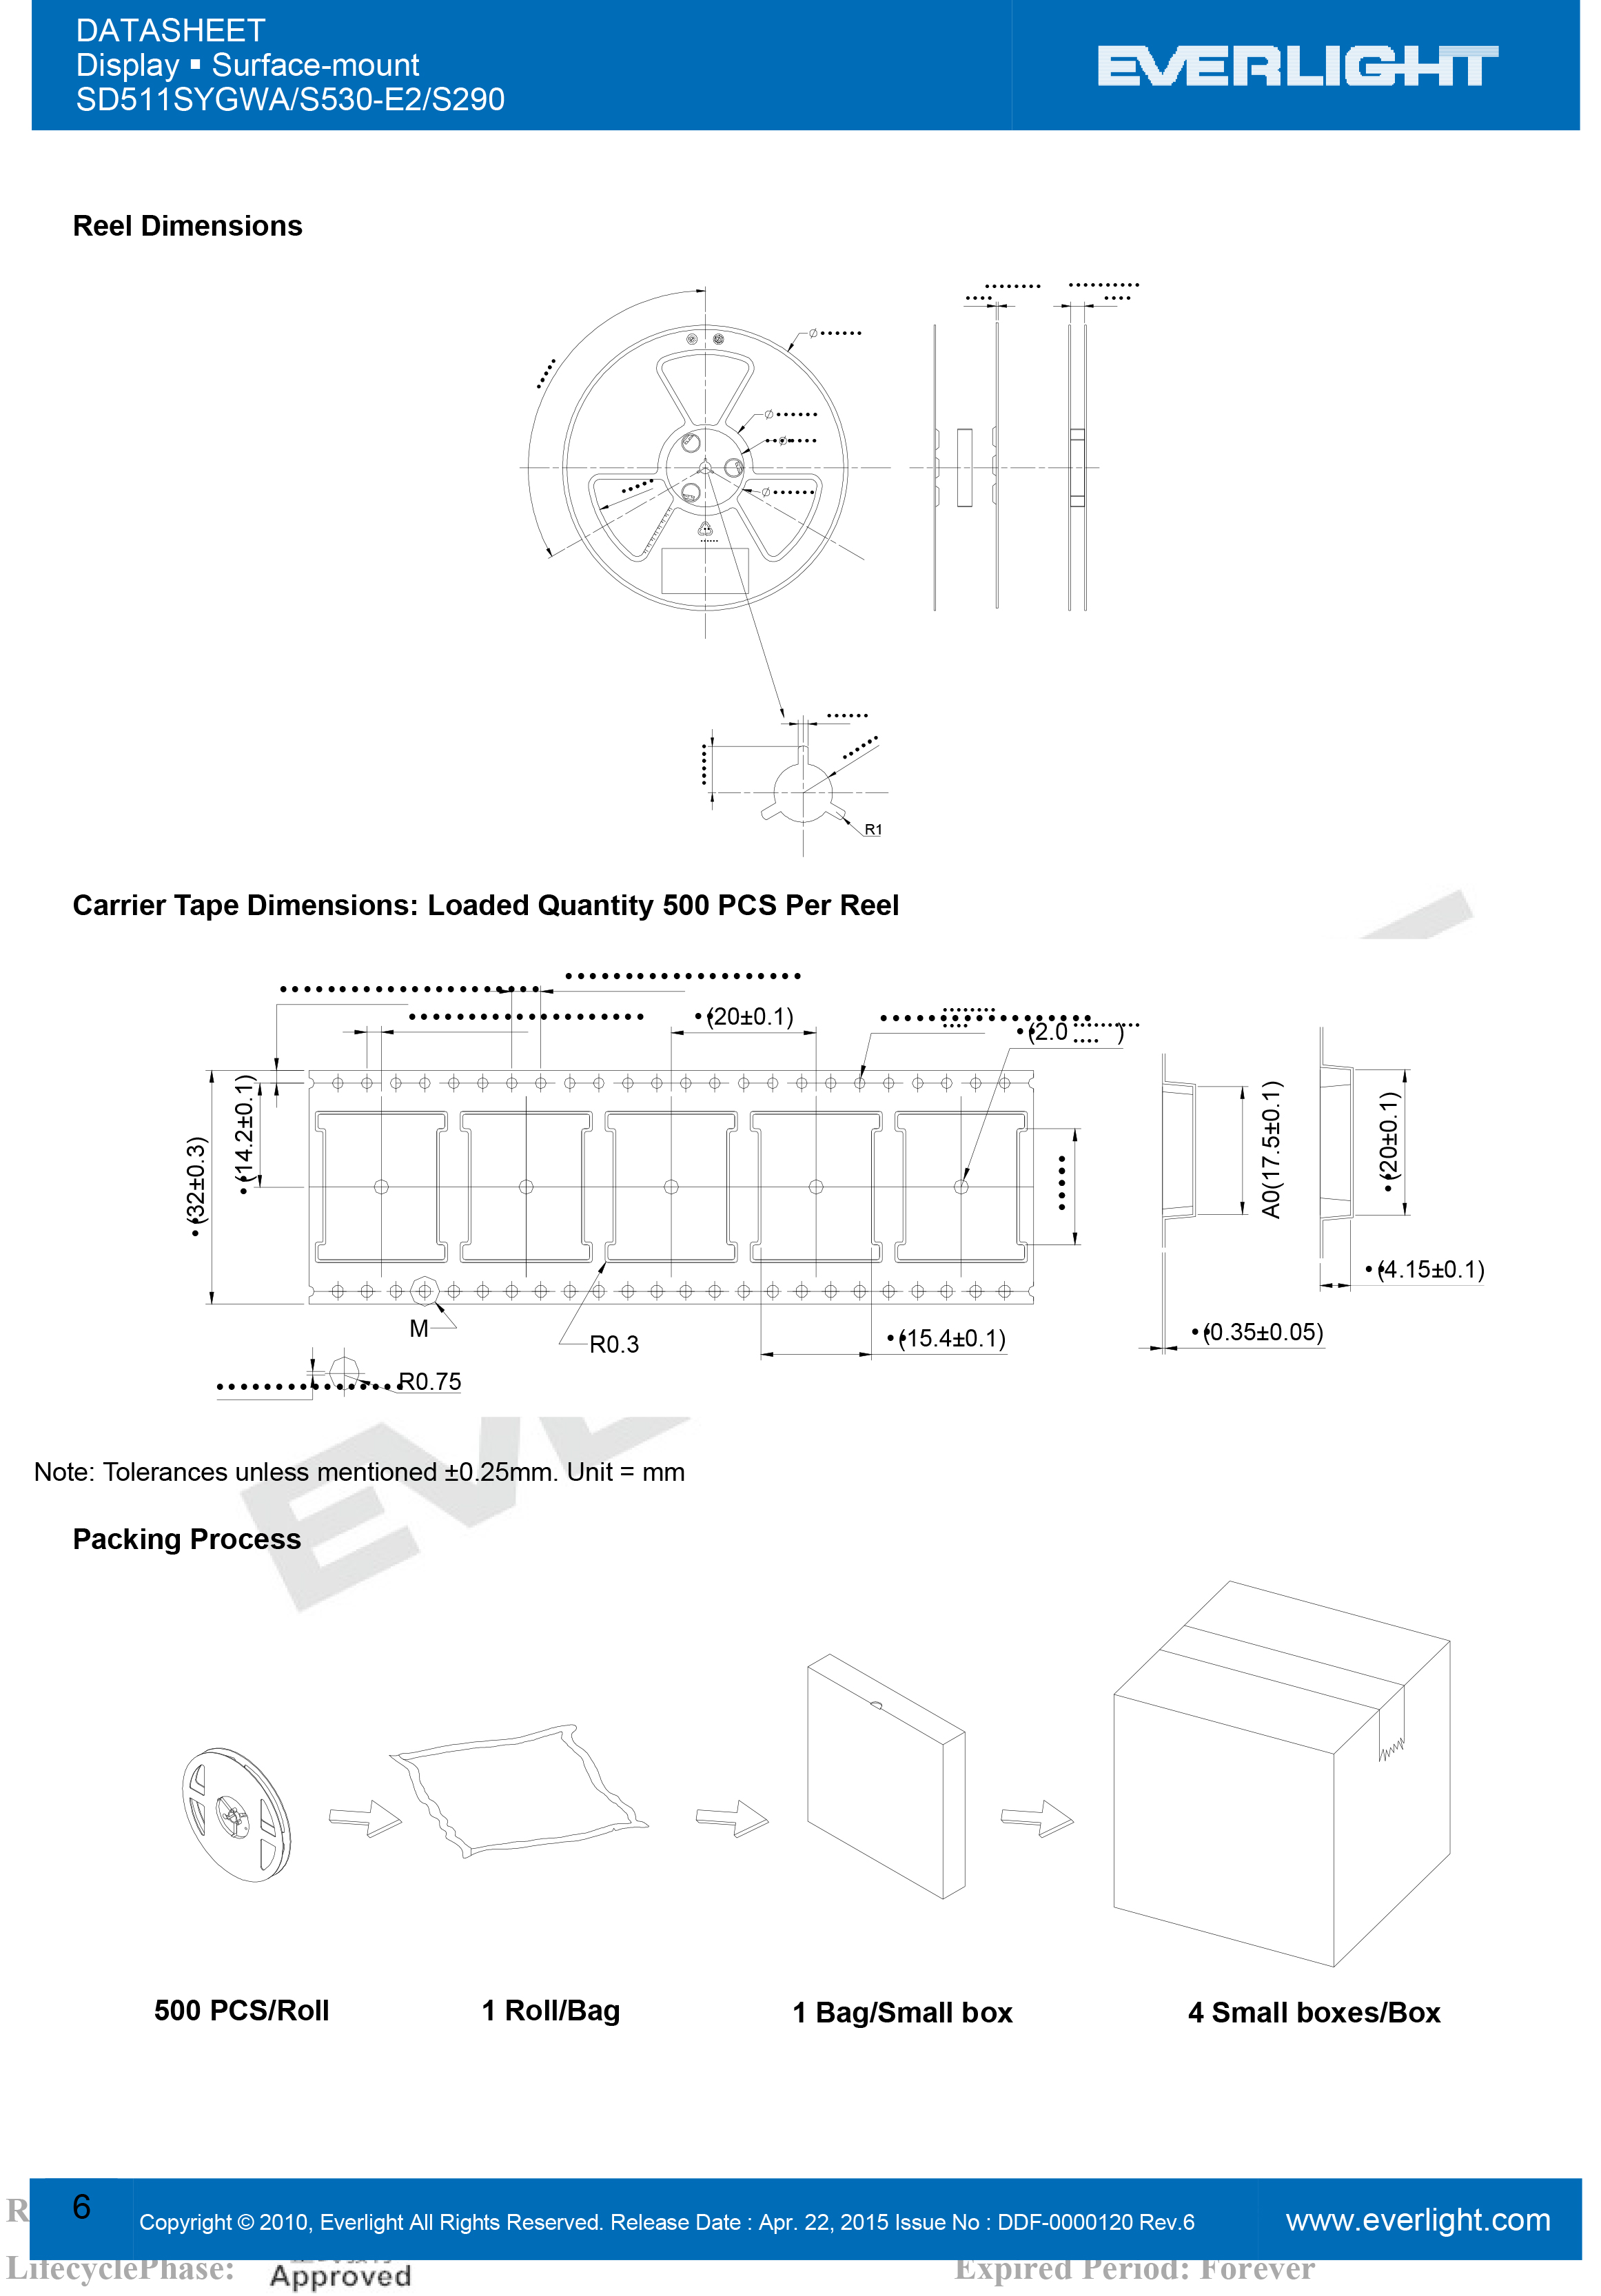 EVERLIGHT DIGITAL TUBE SD511SYGWA/S530-E2/S290 Datasheet